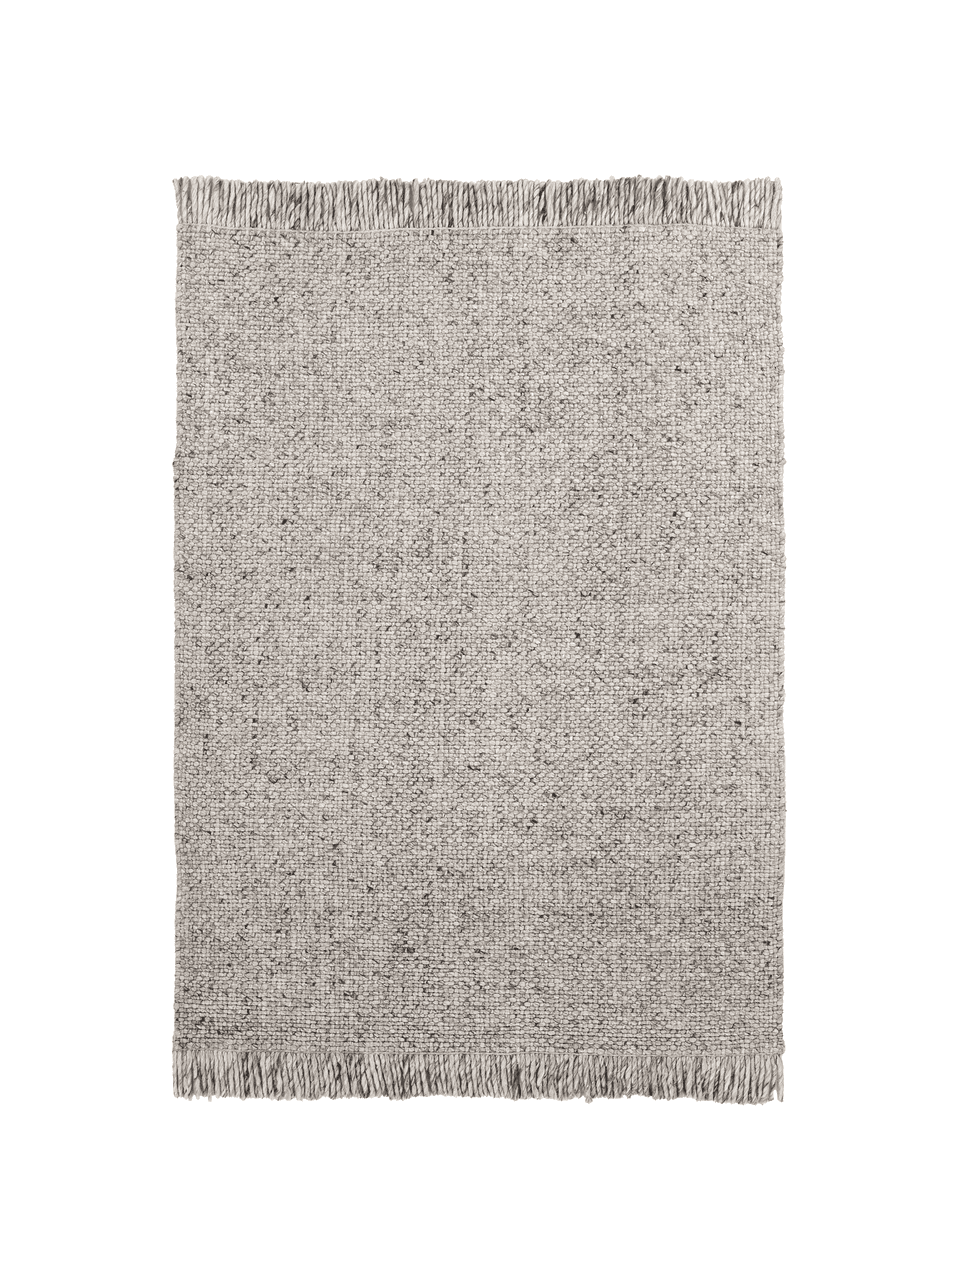 Ručně tkaný vlněný koberec s třásněmi Alvin, Šedá, melírovaná